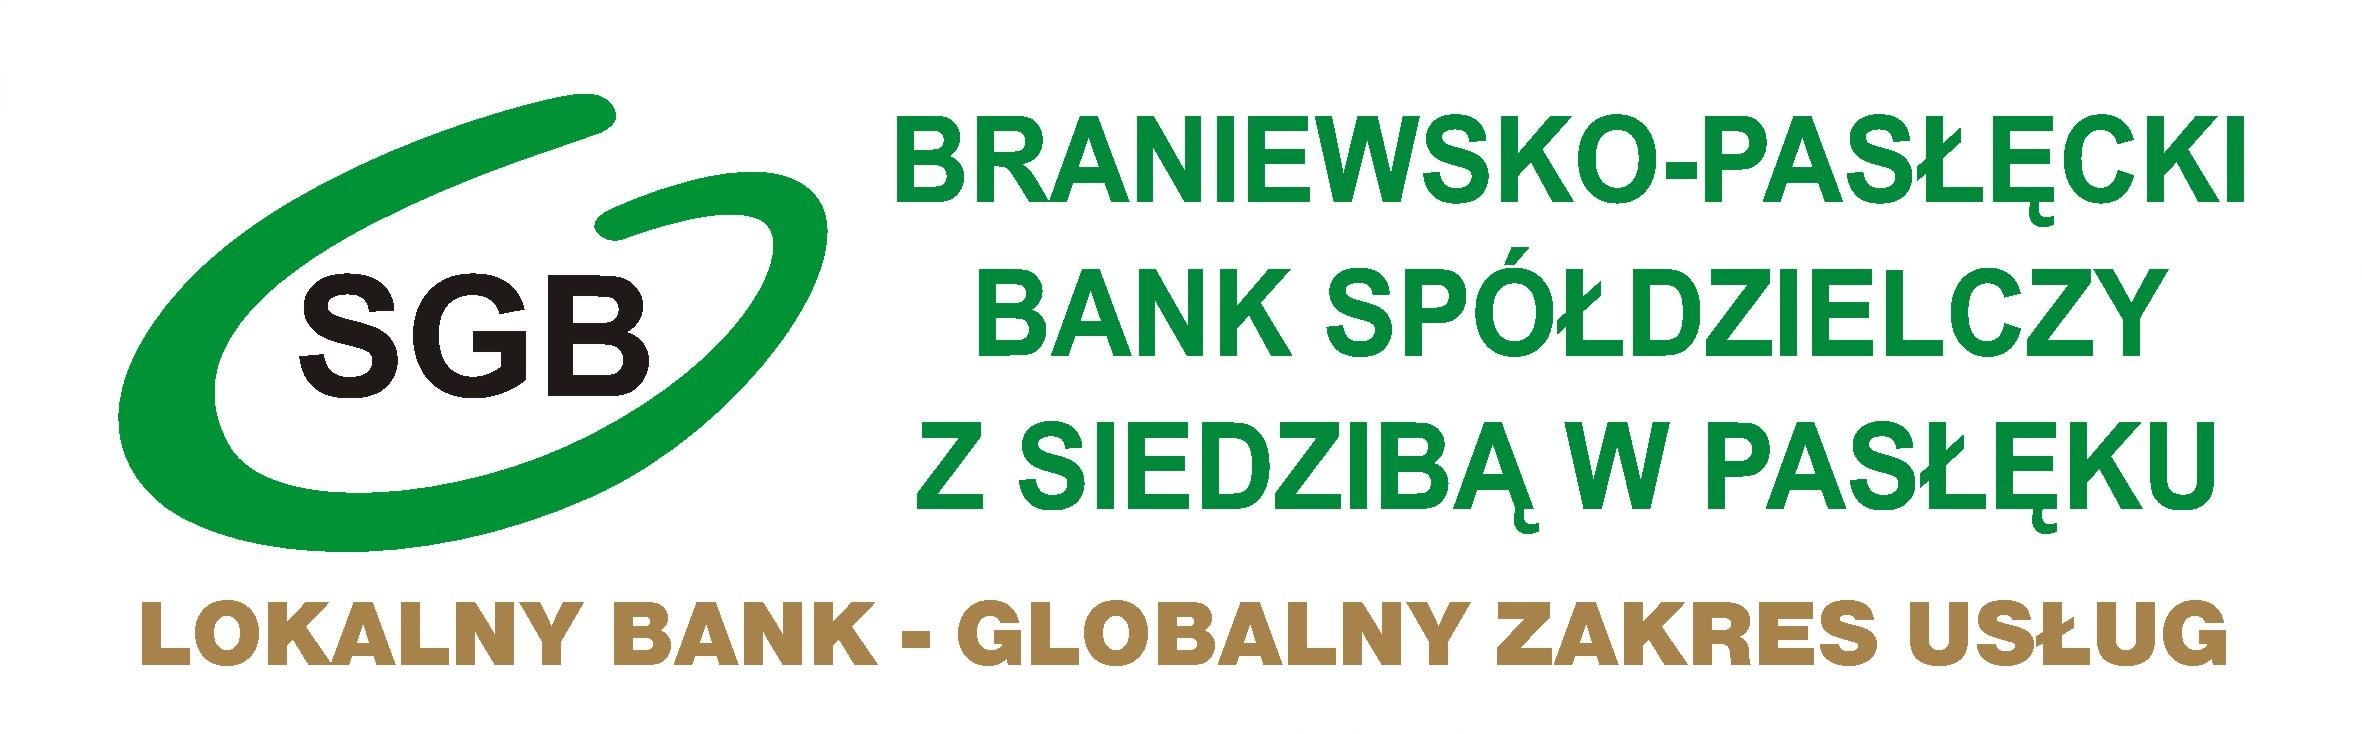 Placówki i bankomaty - Braniewsko-Pasłęcki Bank Spółdzielczy z siedzibą w Pasłęku